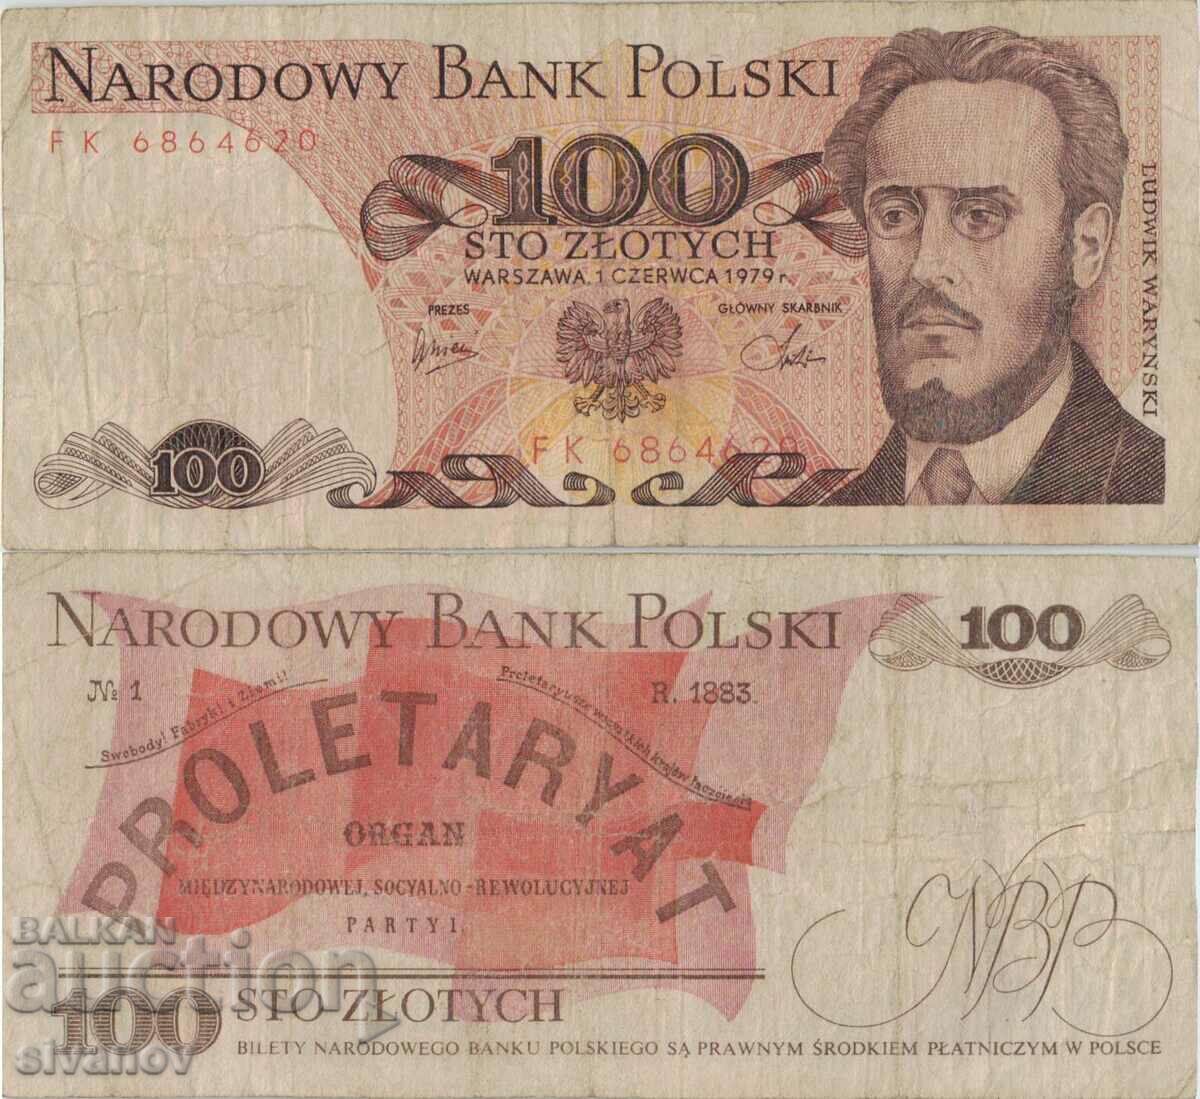 Poland 100 zloty 1979 banknote #5300